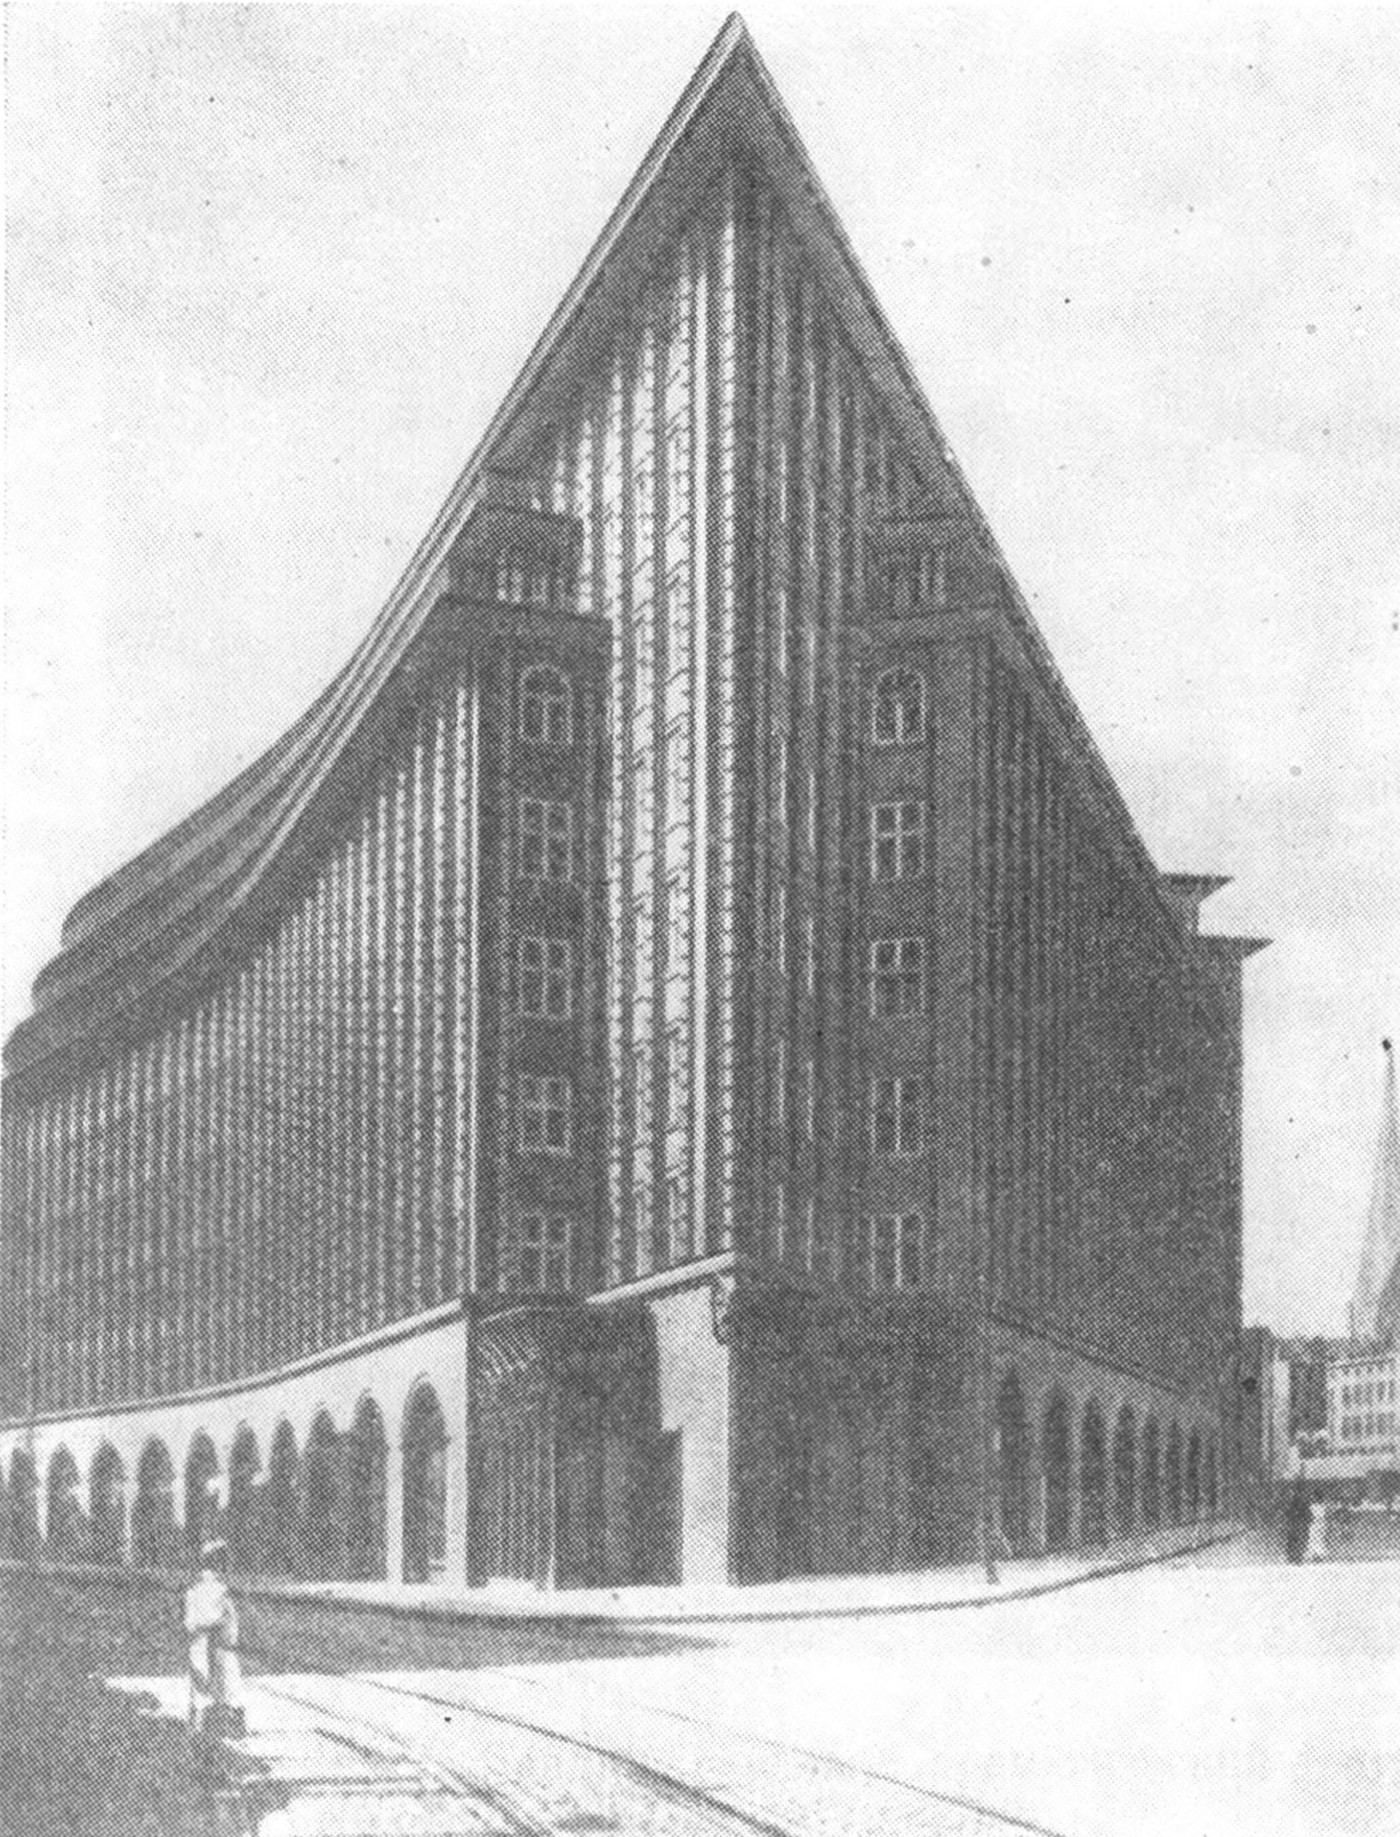 5. Гамбург. Конторское здание Чили-хауз, 1922 г. Арх. Ф. Хегер. Общий вид, план